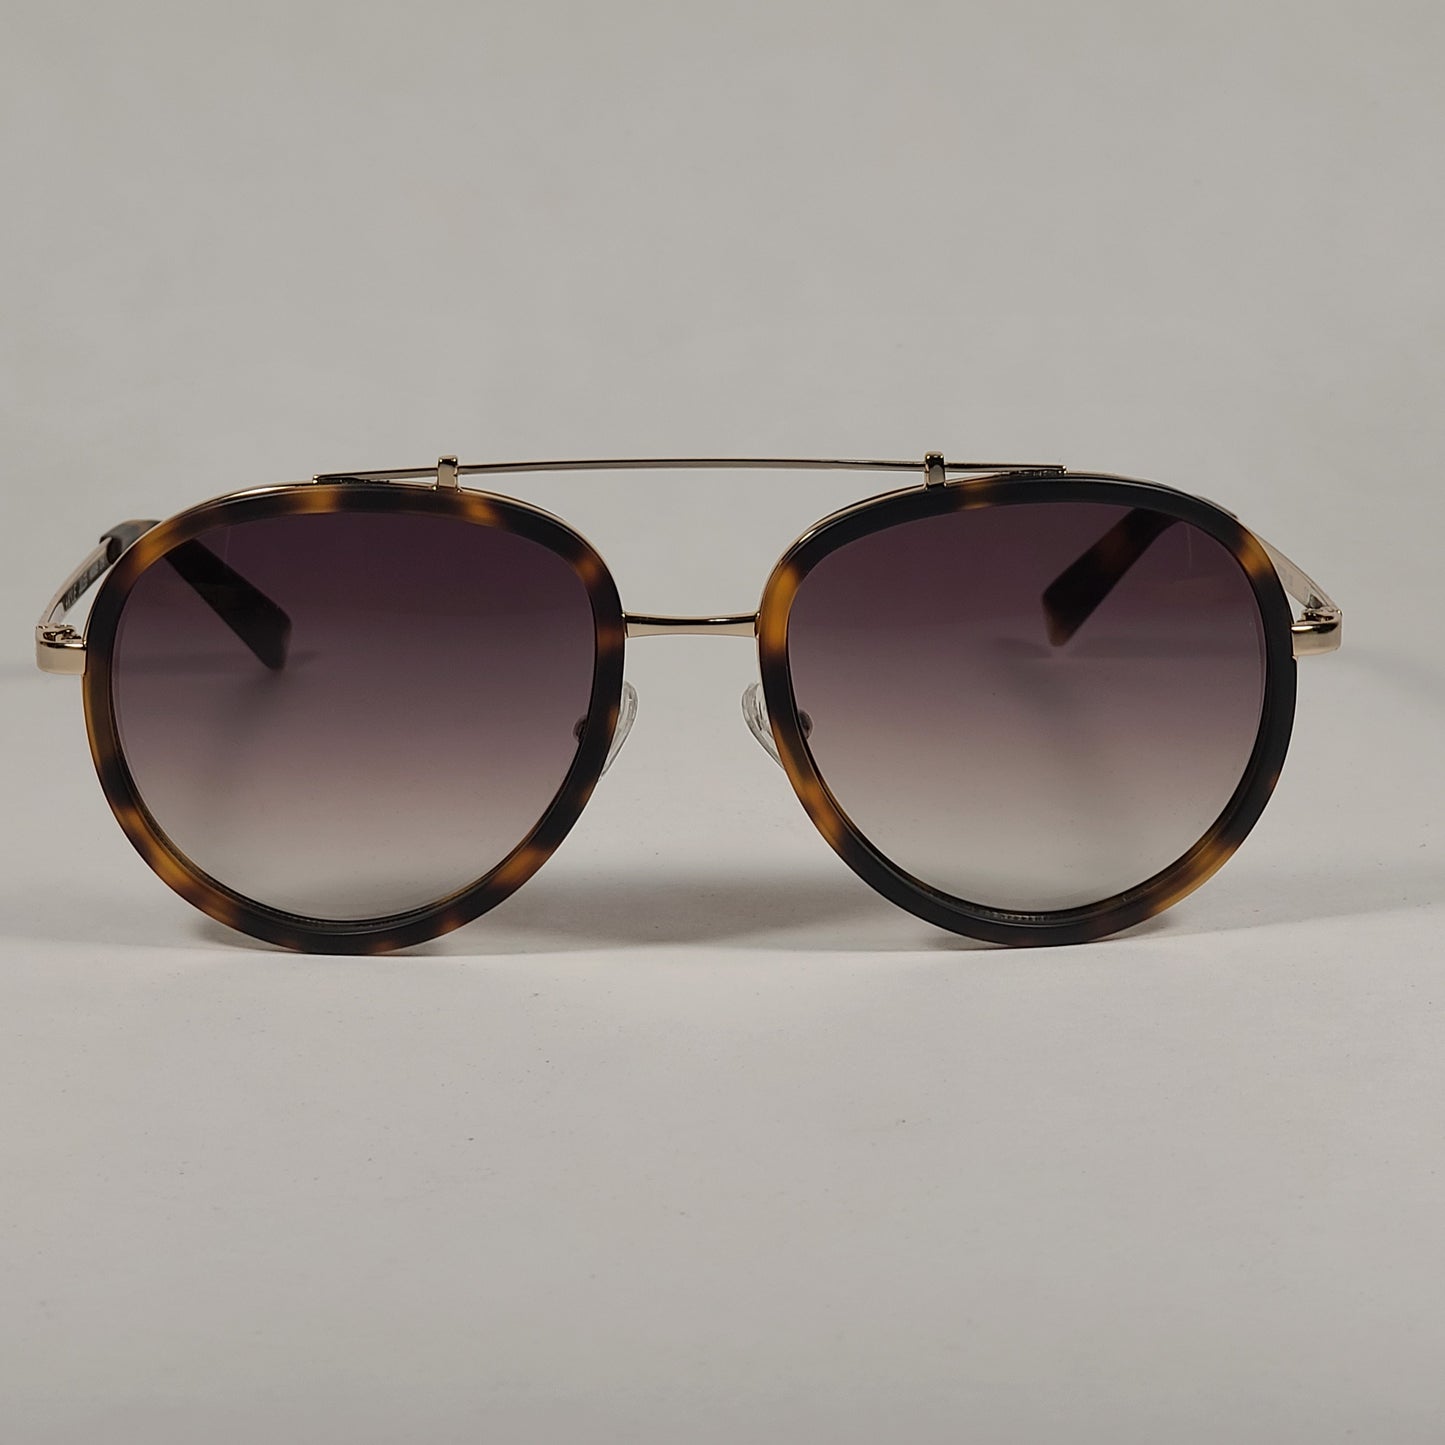 Kendall + Kylie Jules Aviator Sunglasses Matte Demi Tortoise and Gold Frame Brown Gradient Lens KK5005Q 215 - Sunglasses